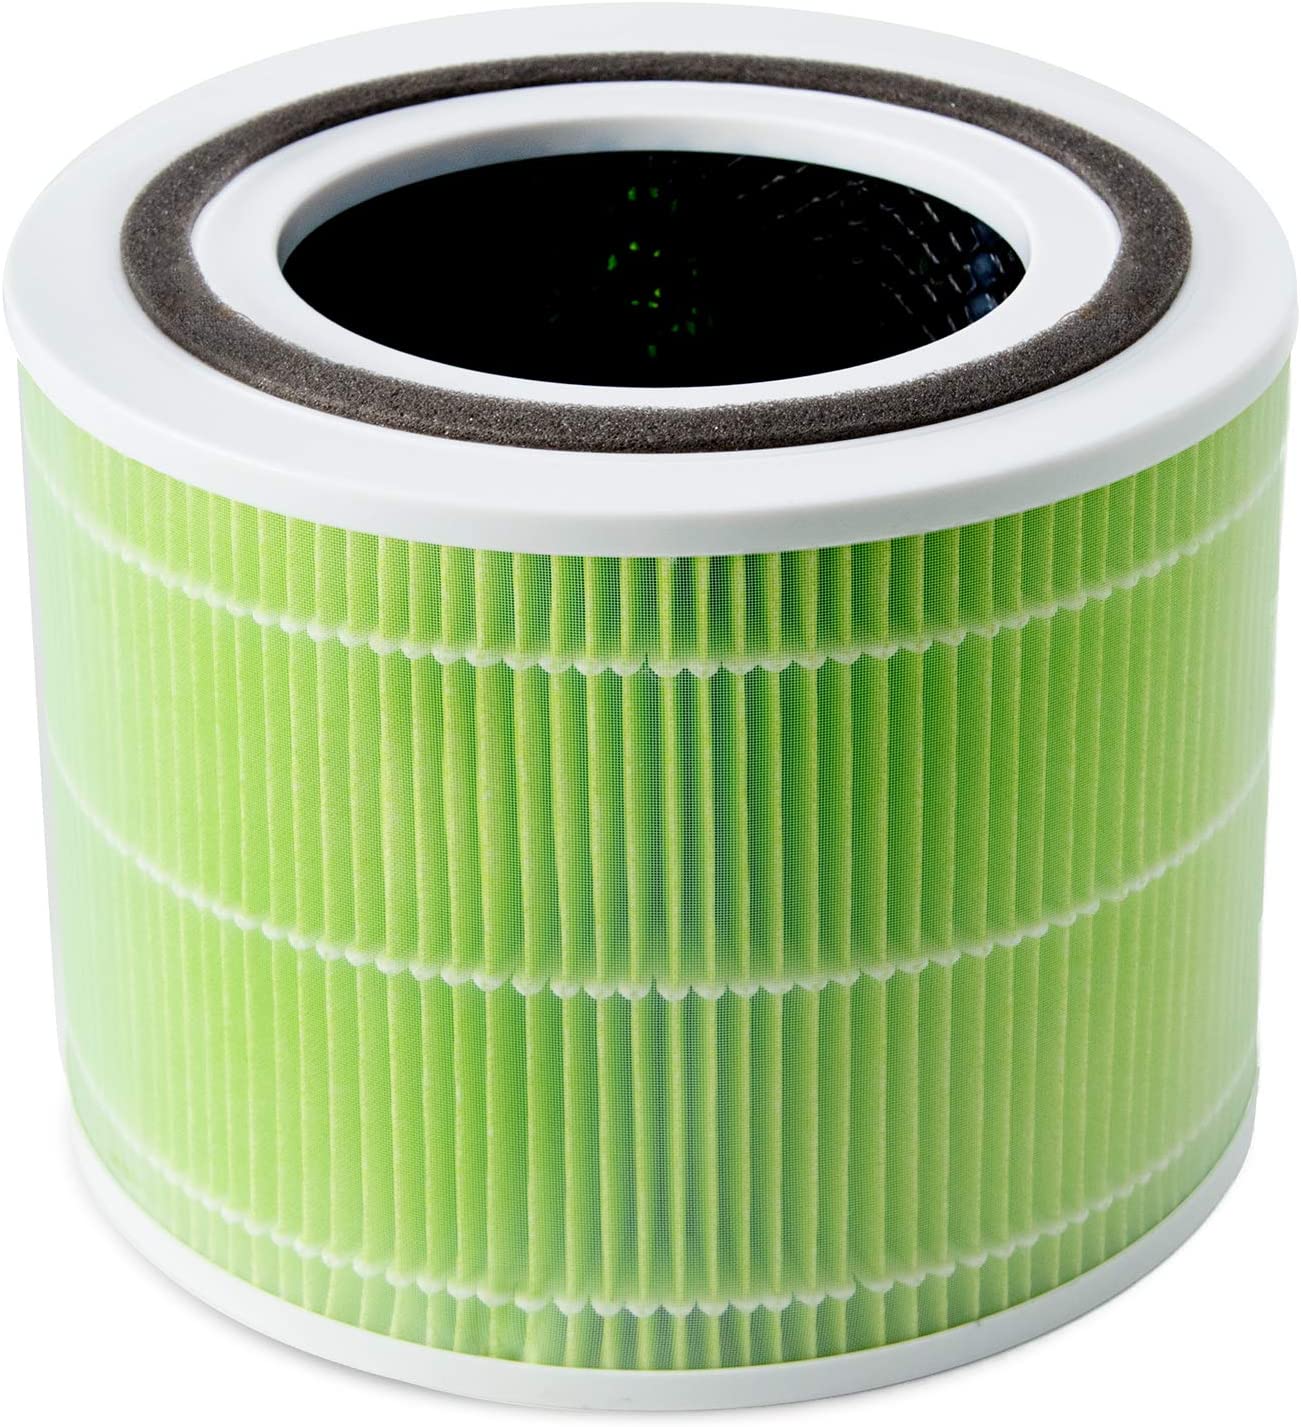 Фильтр для увлажнителя воздуха Levoit Air Cleaner Filter Core 300 True HEPA 3-Stage (Original Mold and Bacteria Filter)